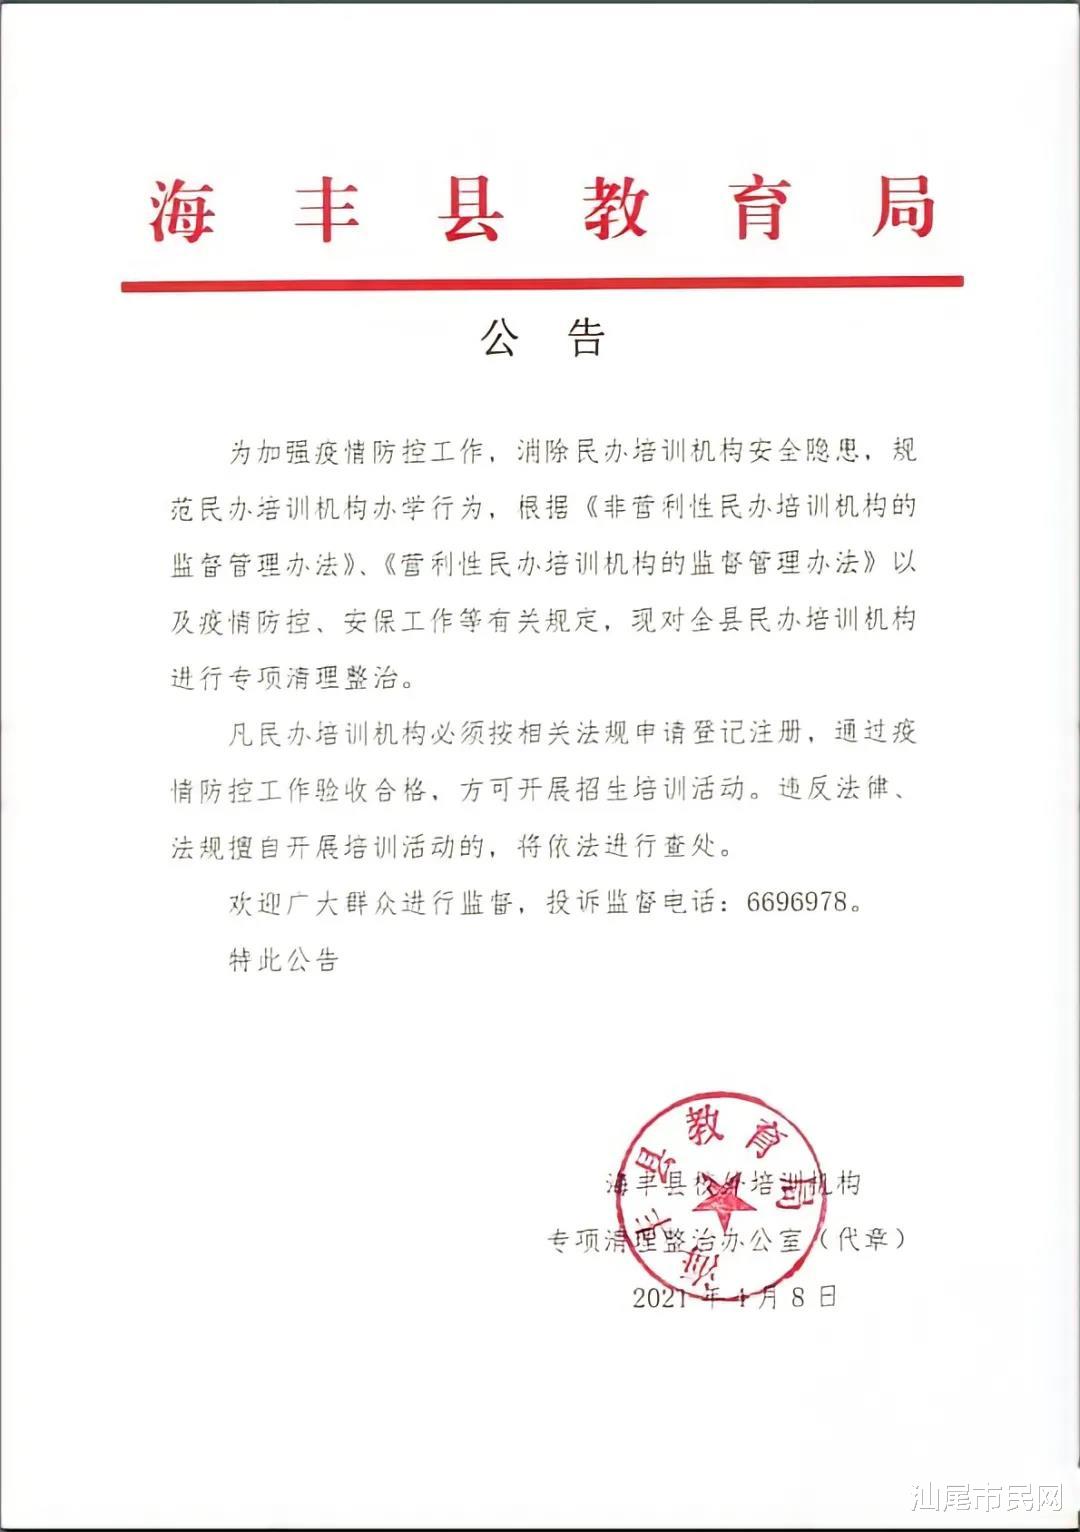 海丰县教育局发布公告